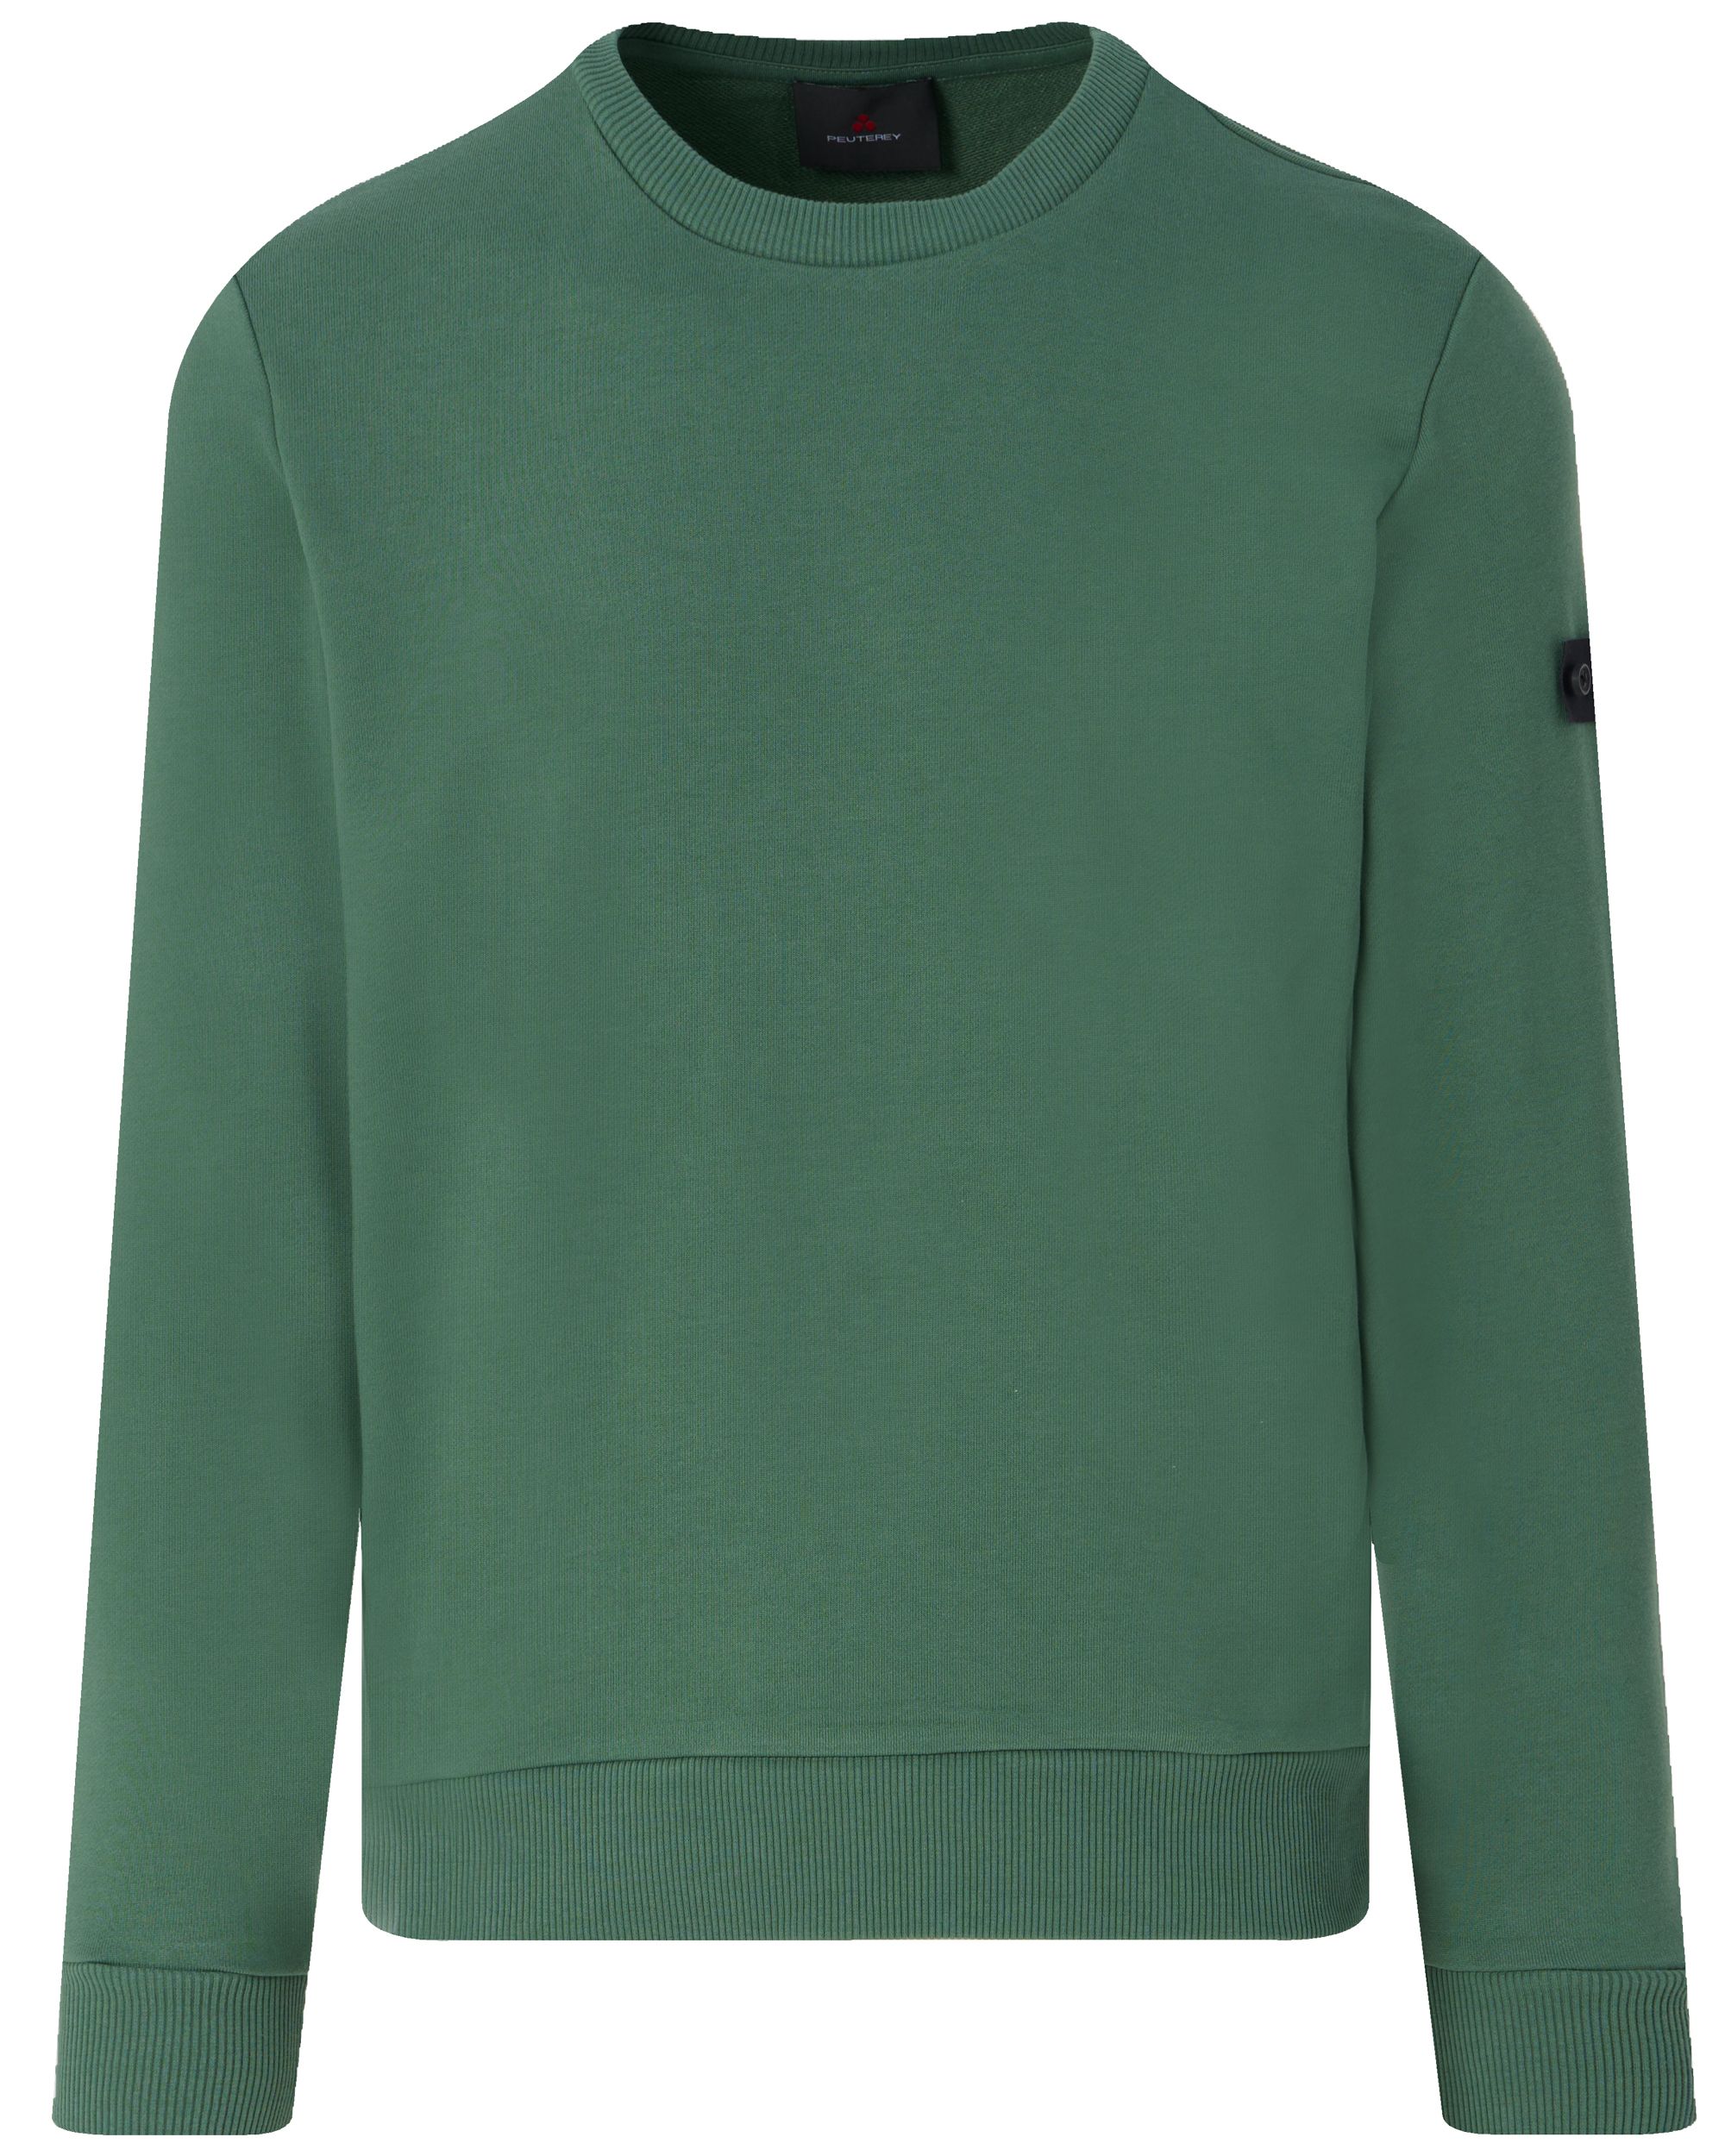 Peuterey Saidor Sweater Groen 094257-001-L